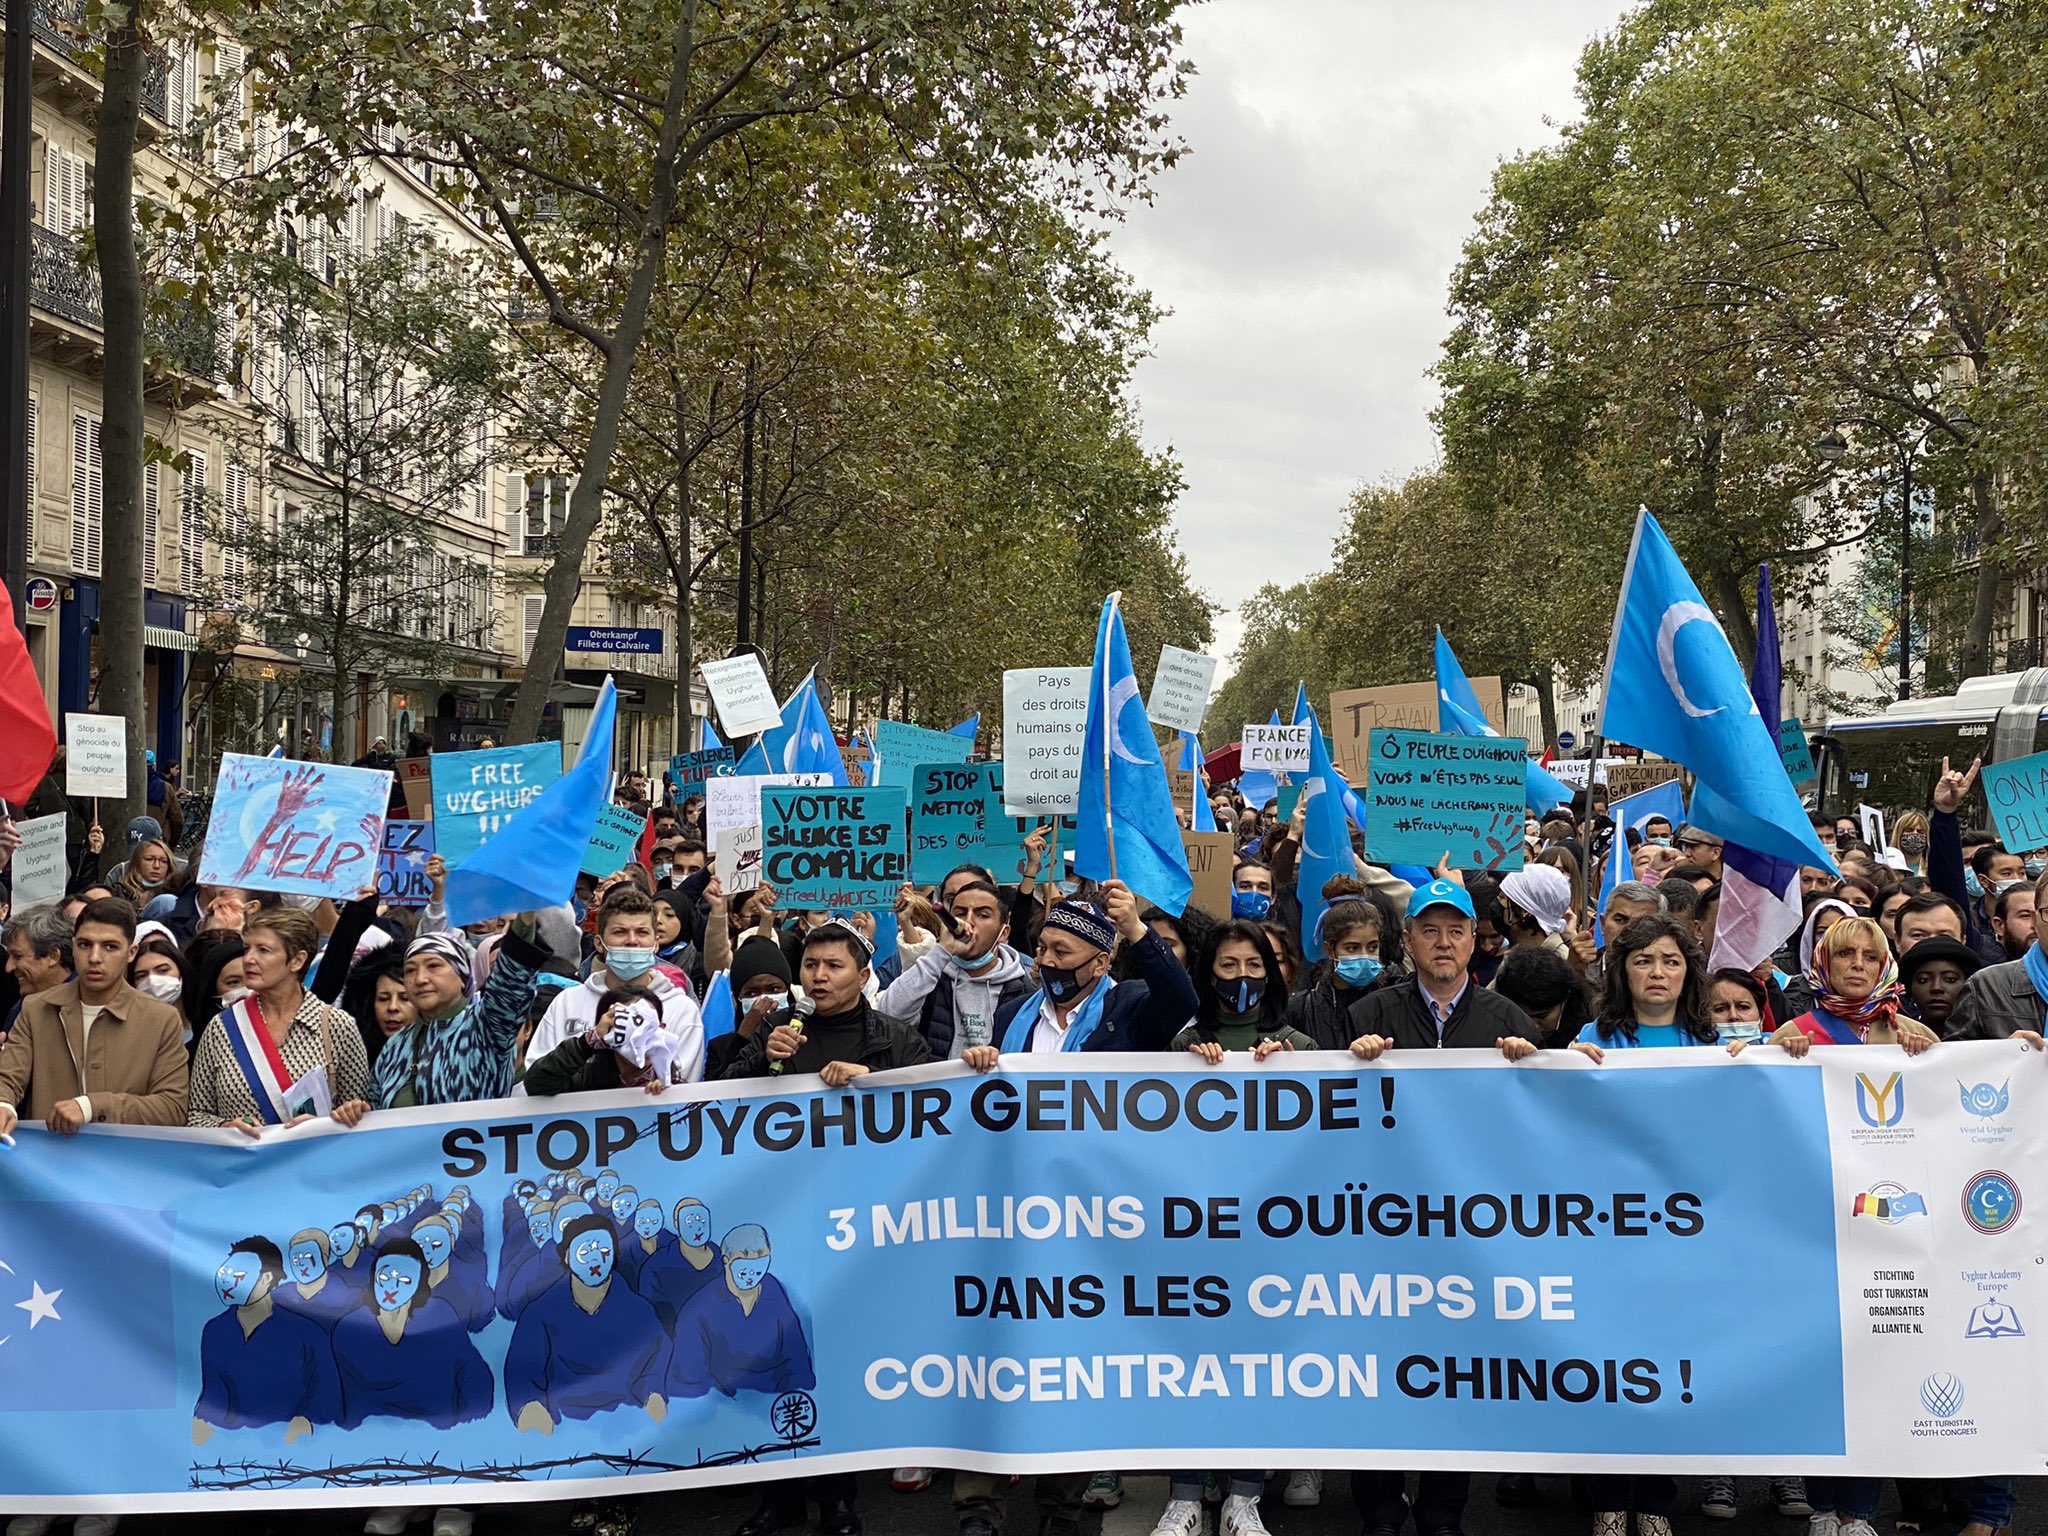 Tensions autour de la visite de Xi Jinping à Paris : Les Ouïghours dénoncent une « gifle » de la part de Macron